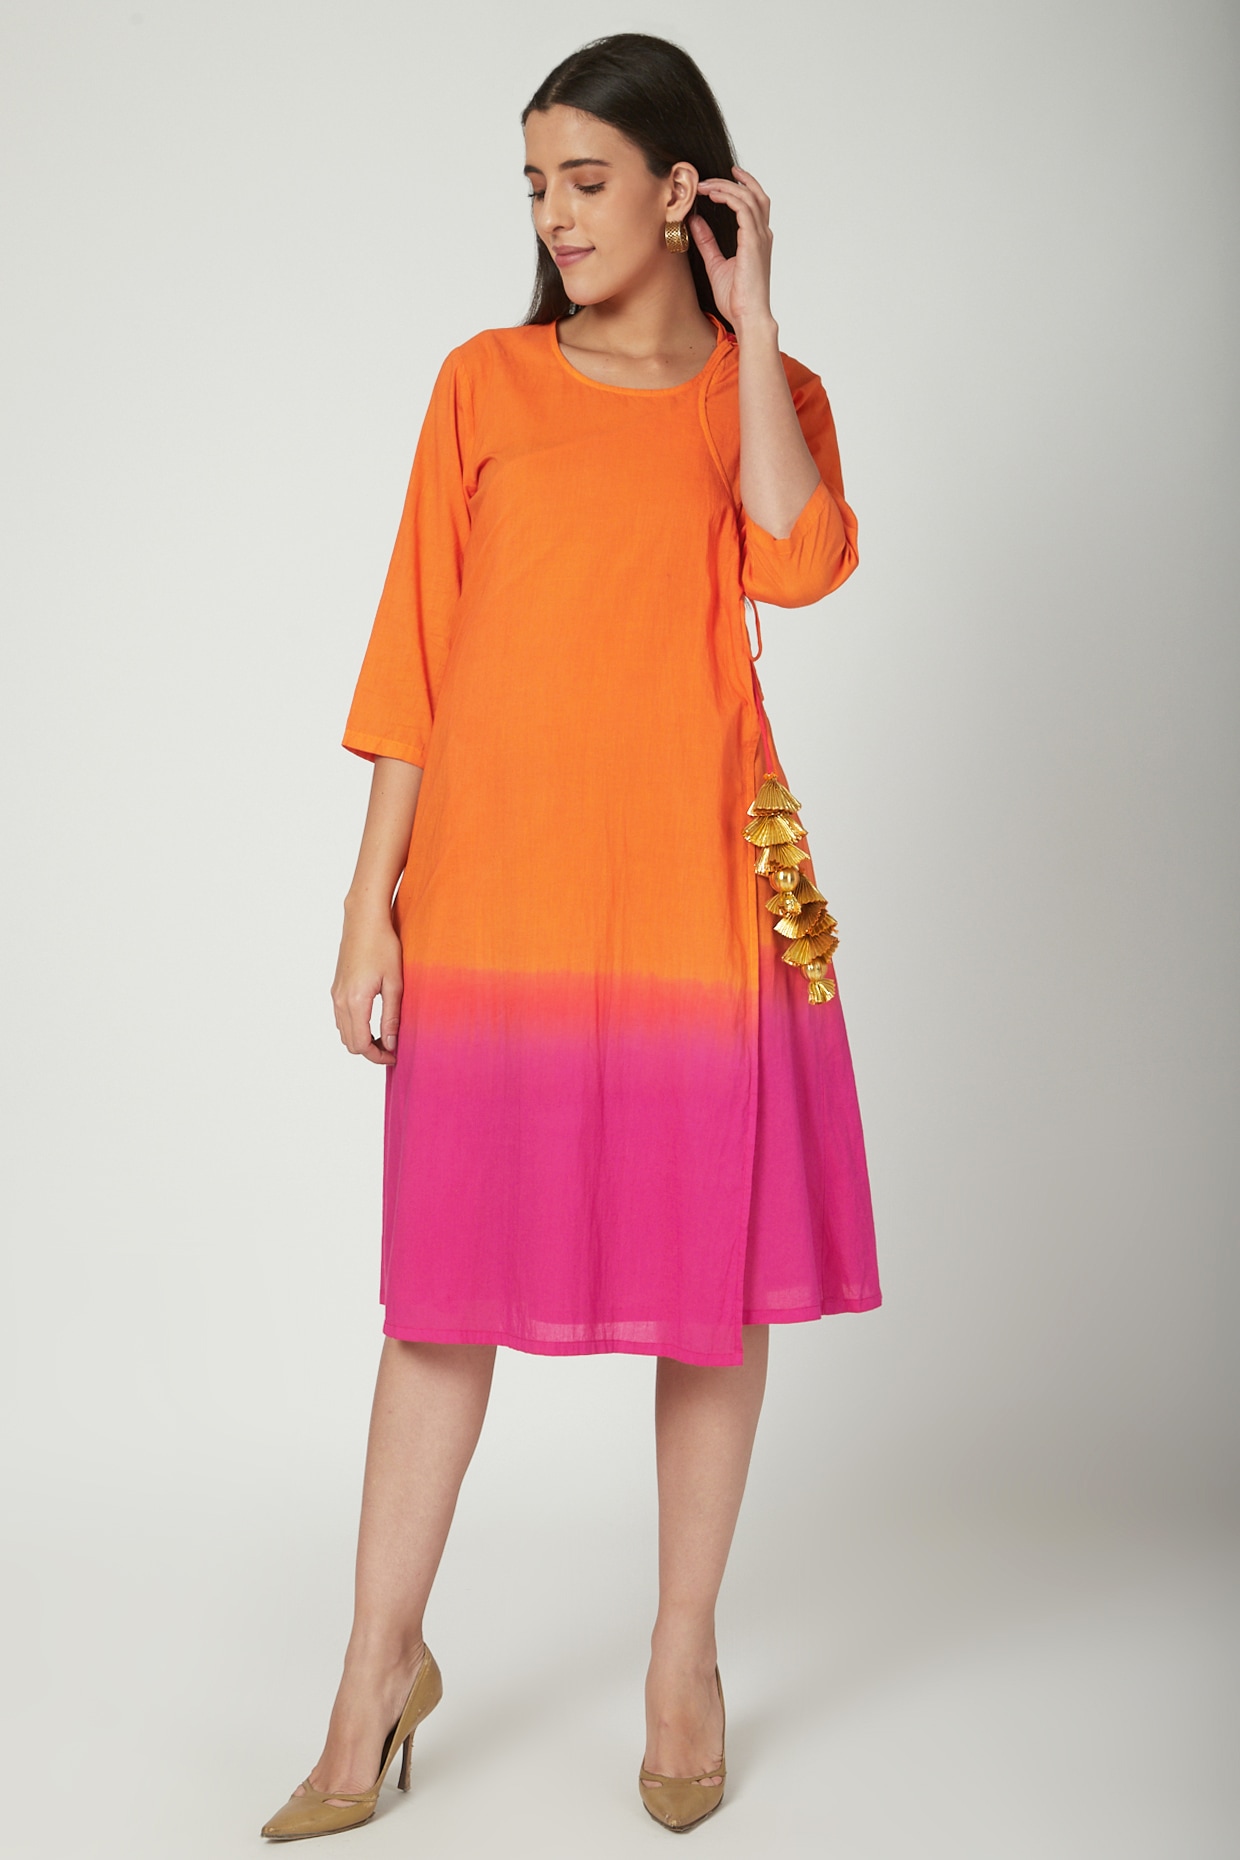 orange ombre dress